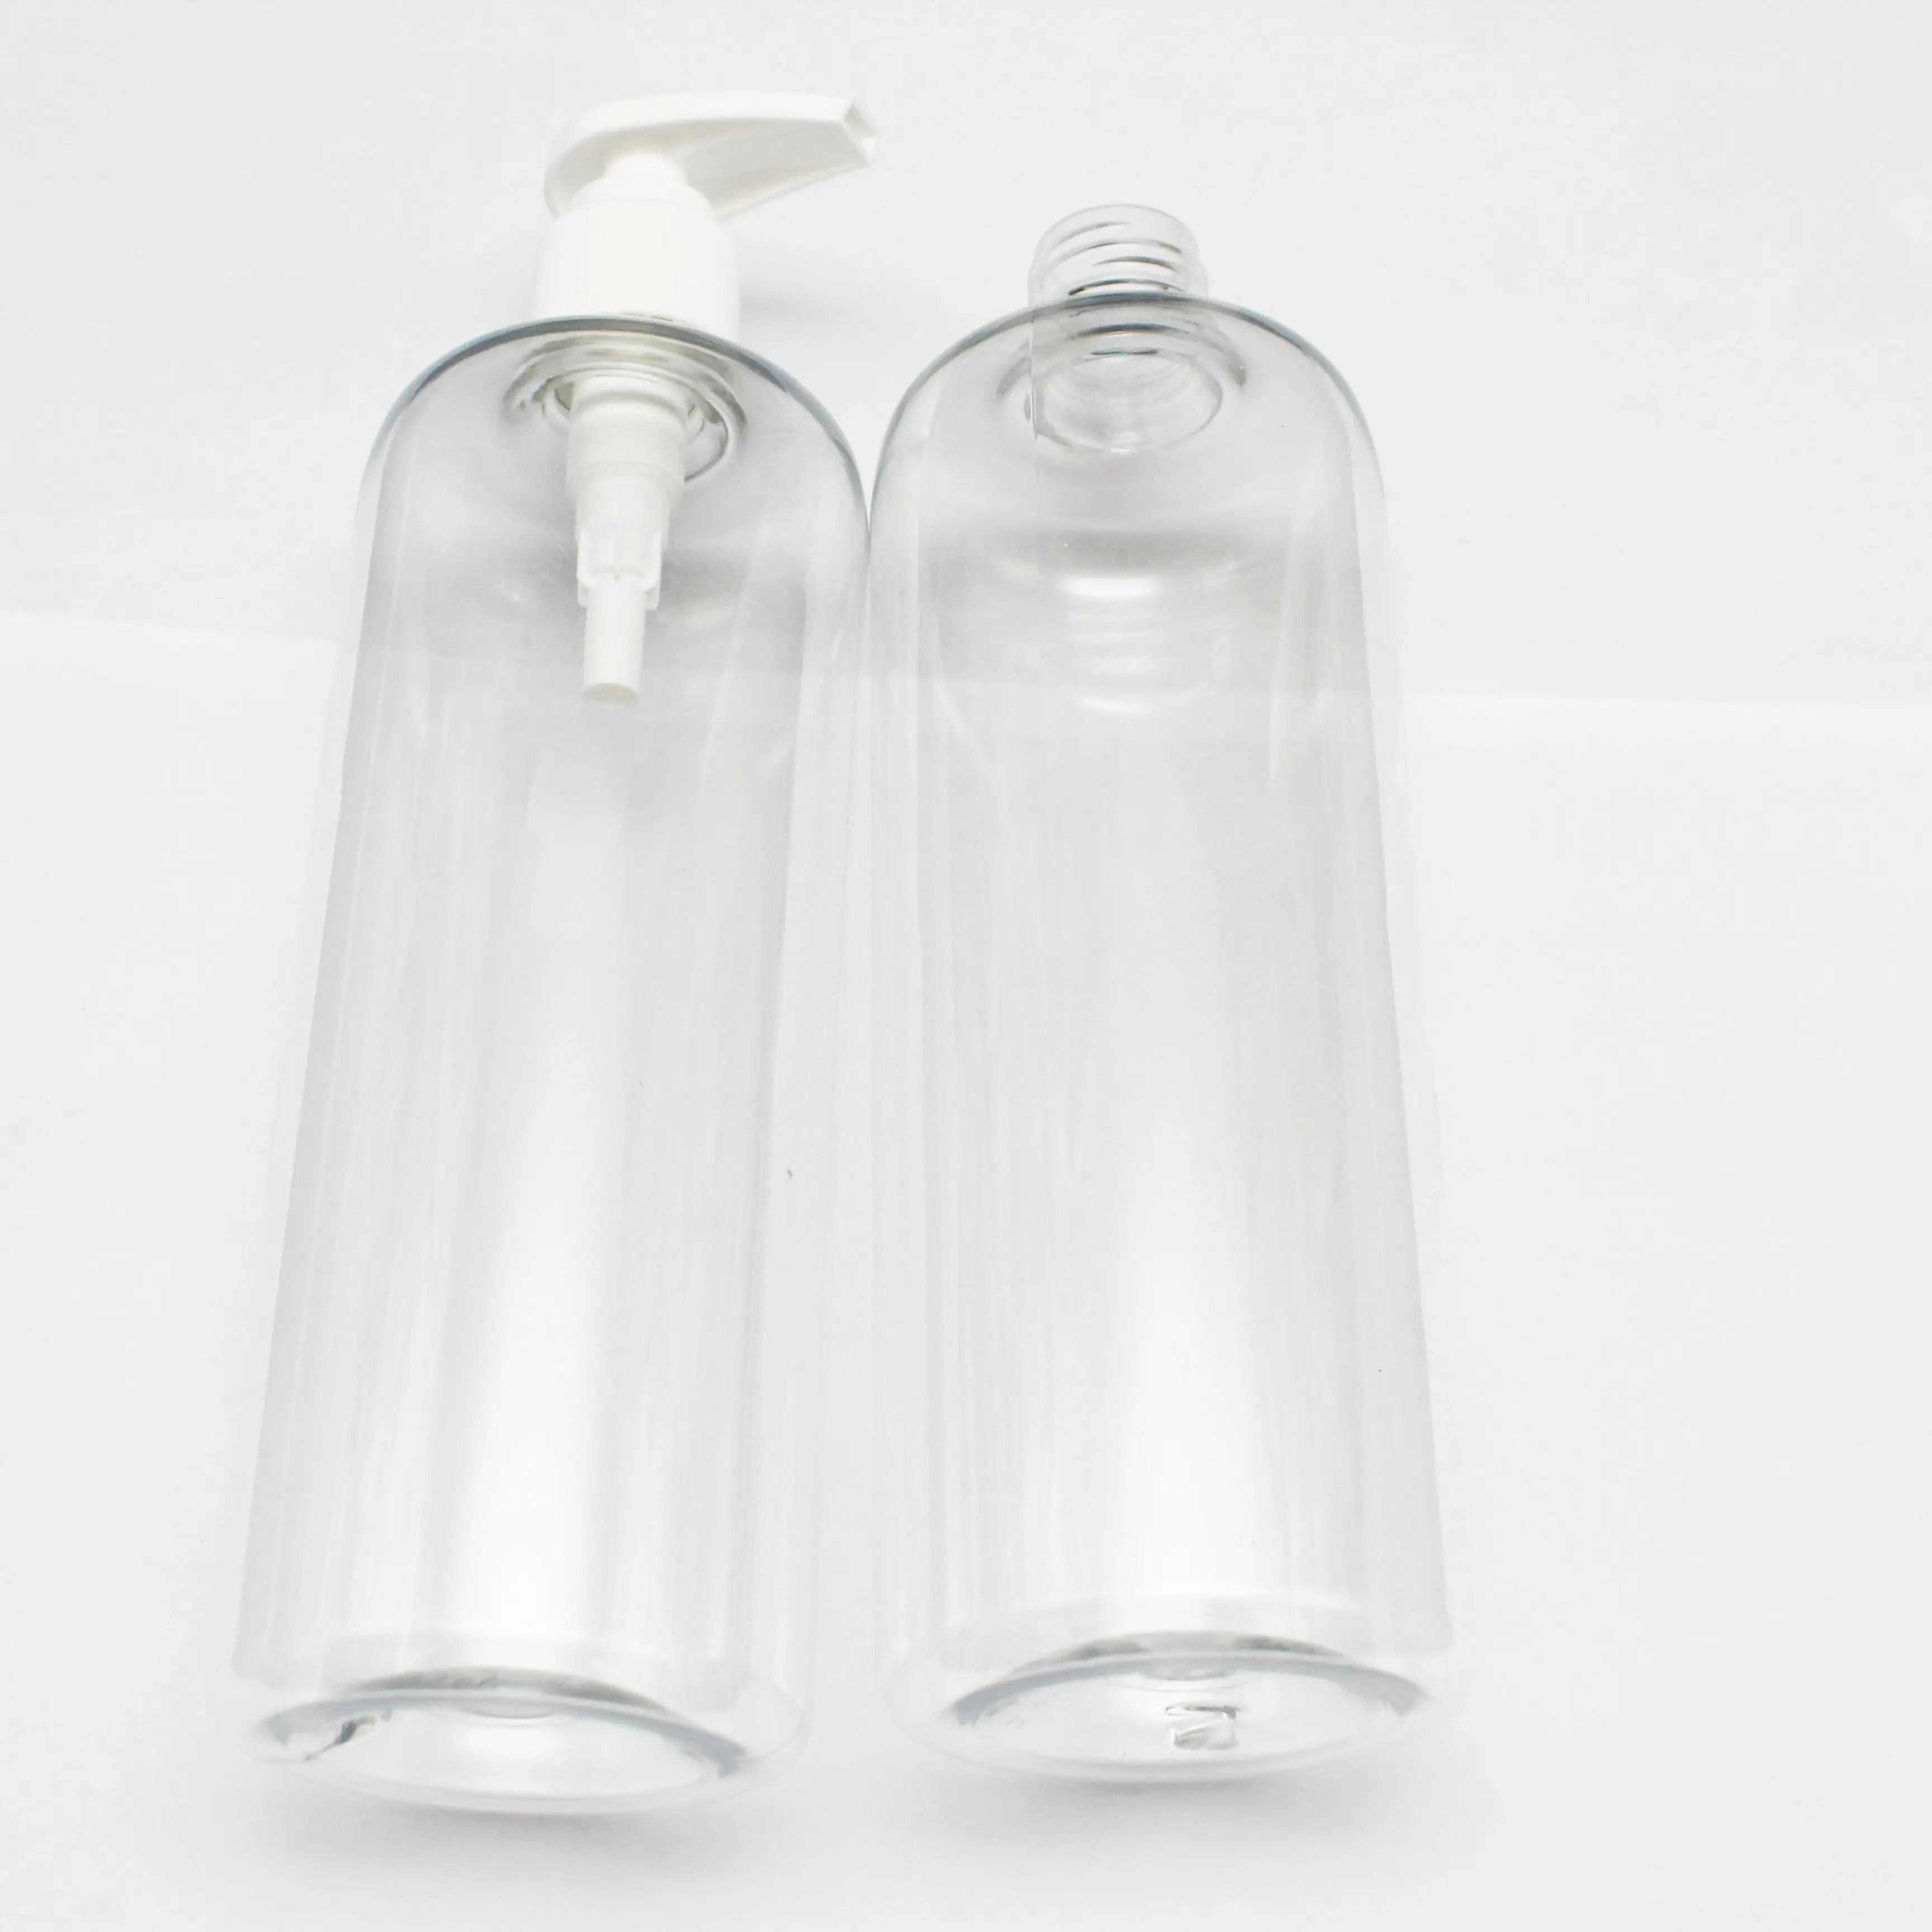 Bán buôn rỗng nhựa phẳng Vai chai rõ ràng chất lỏng bao bì mỹ phẩm container bơm áp lực chai với bơm nhựa